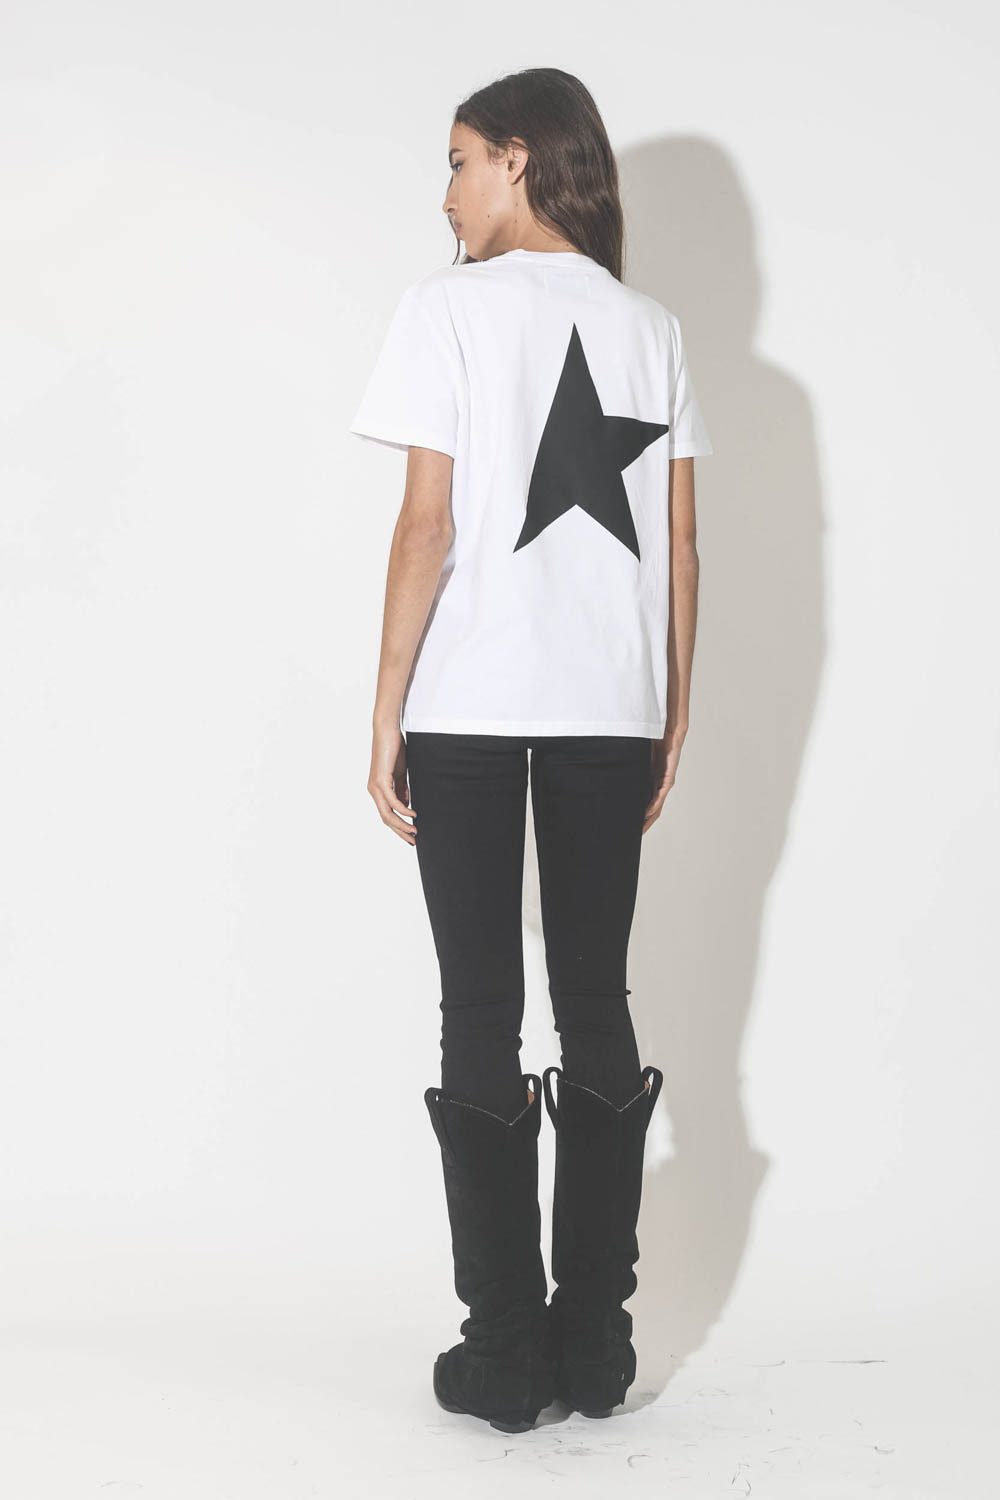 Tee-shirt manches courtes blanc logo noir étoile dans le dos noire Golden Goose. Porté avec un jeans noir skinny.